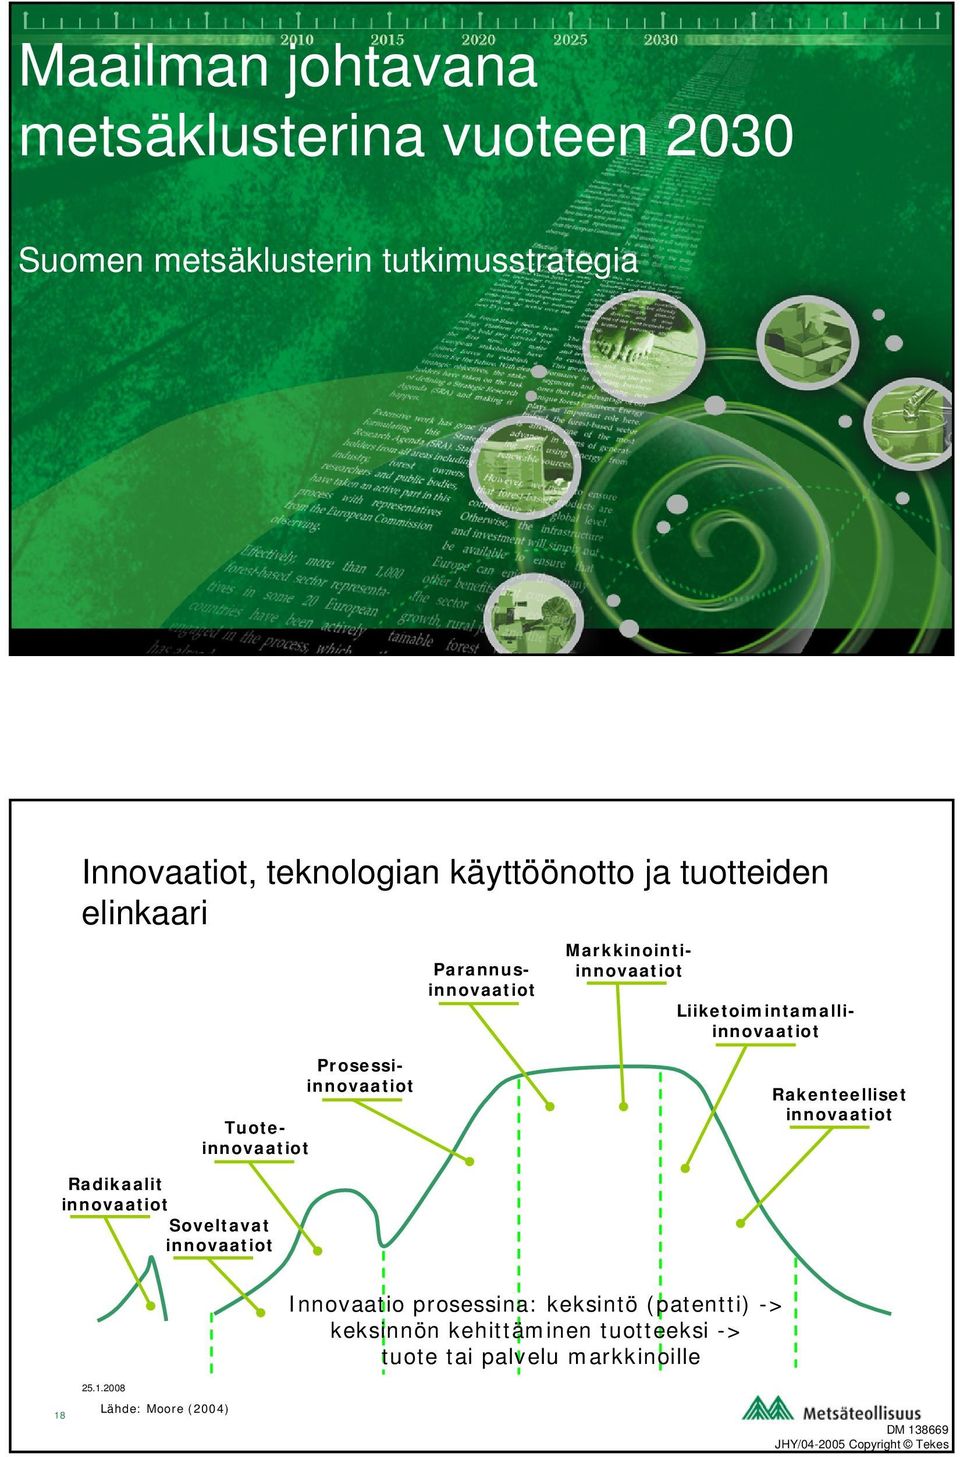 Prosessiinnovaatiot Rakenteelliset innovaatiot Radikaalit innovaatiot Soveltavat innovaatiot 18 Lähde: Moore (2004) Innovaatio